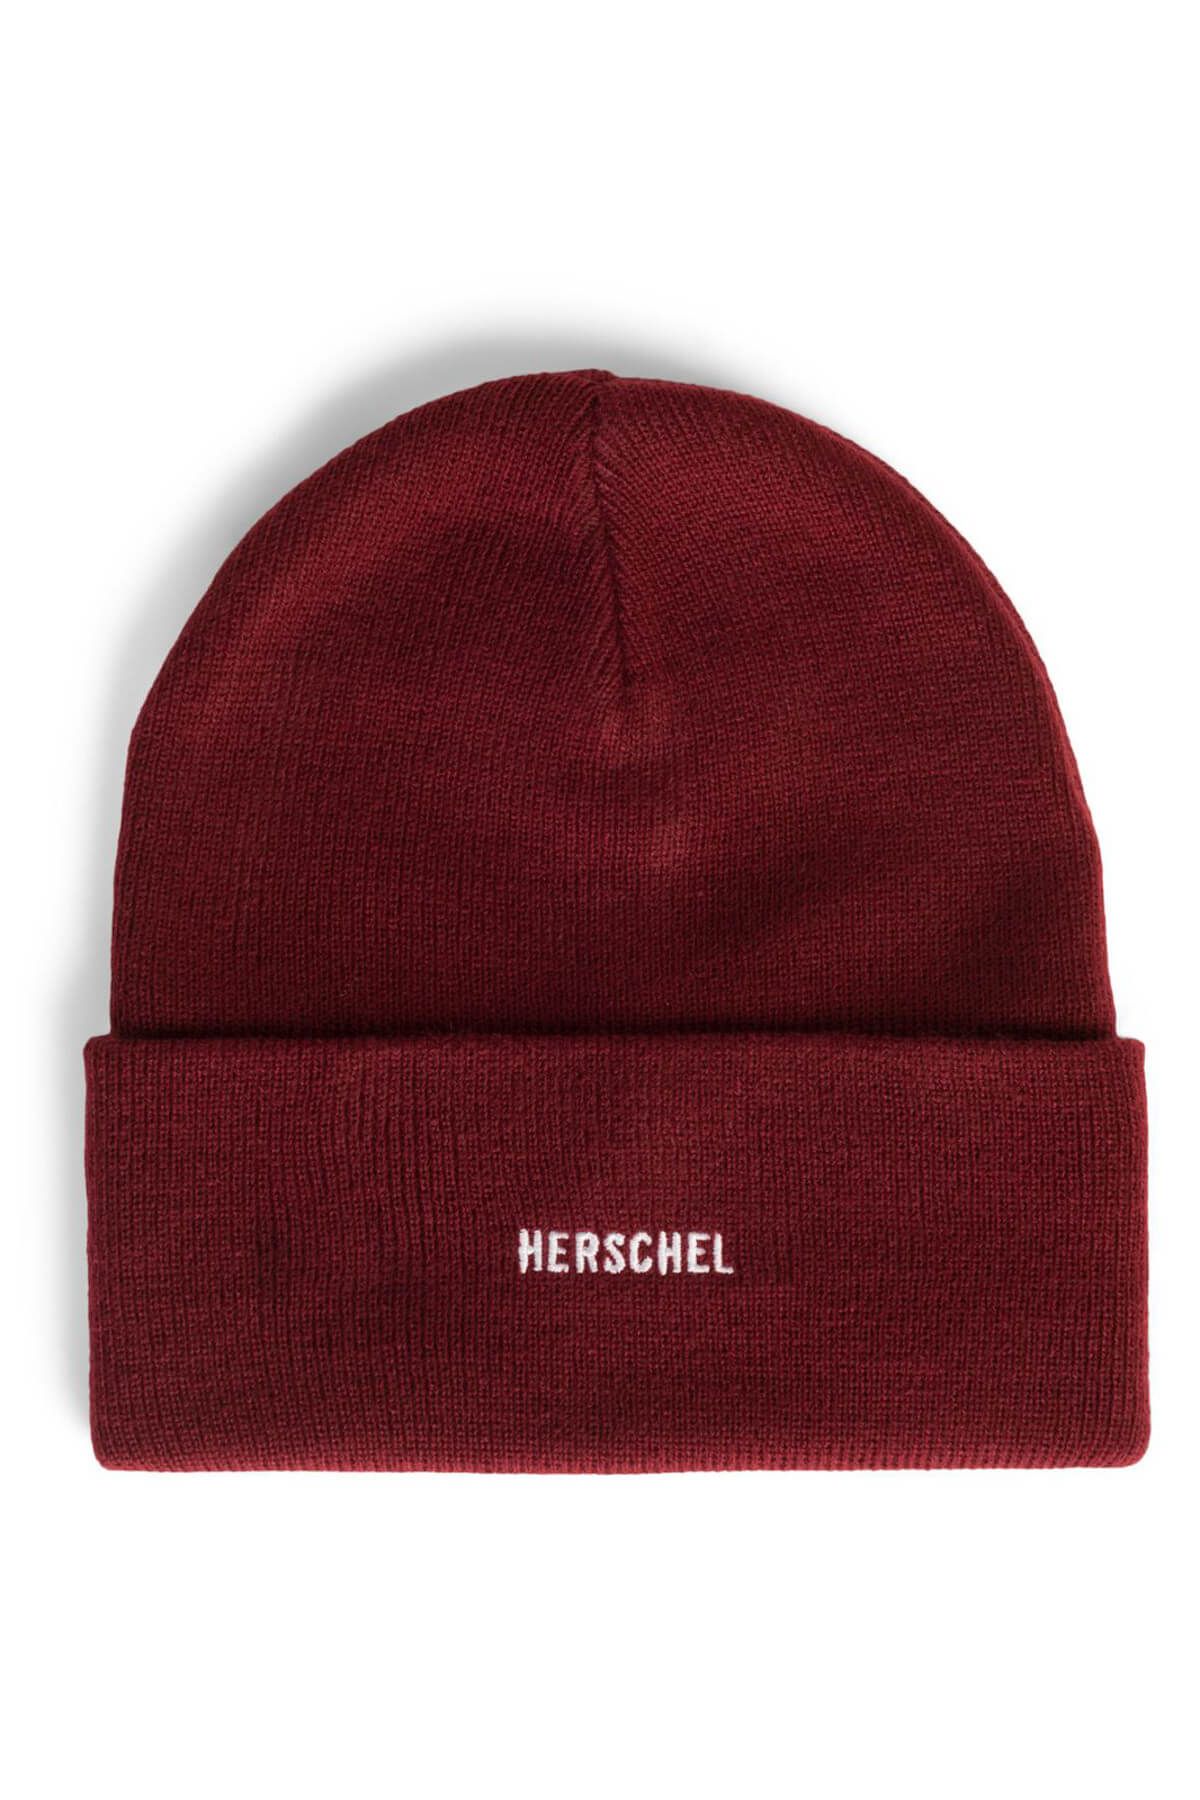 Herschel Herschel Supply Co. Unisex Elmer ID 21x16 cm Şapka 1116-0078-OS